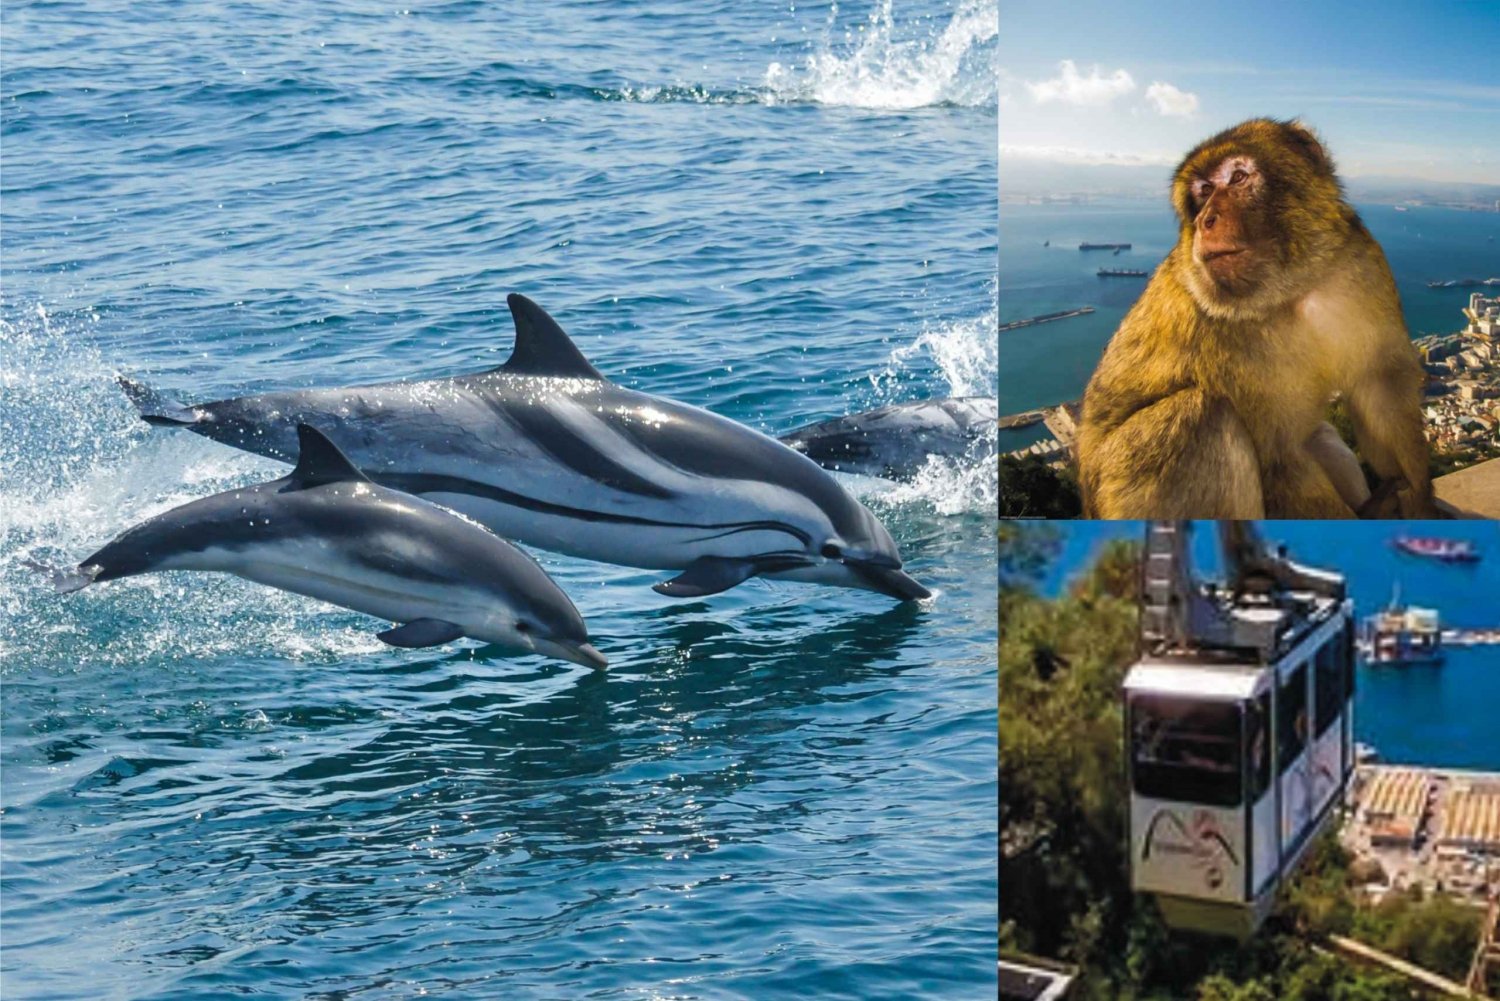 Gibraltar : dauphins et téléphérique (combo coupe-file)